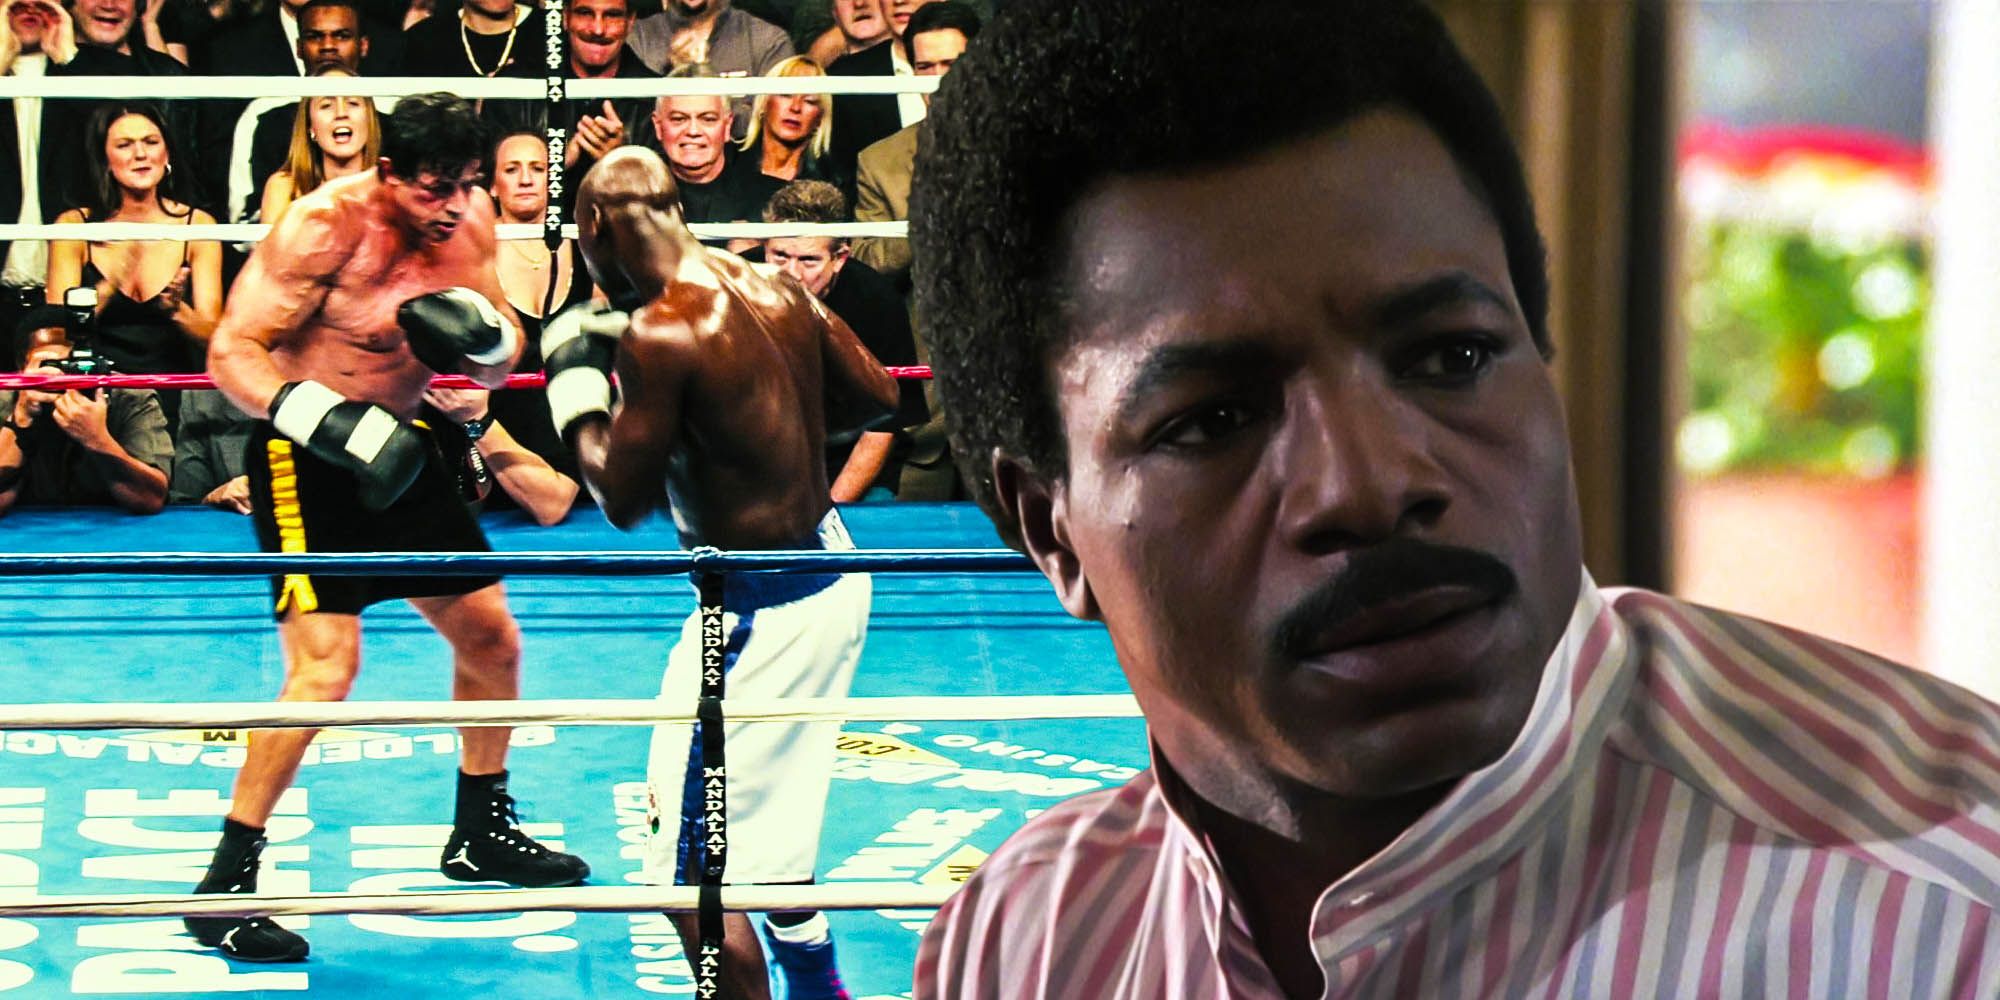 La pelea de Mason Dixon de Rocky fue hipócrita después de la muerte de Apollo Creed